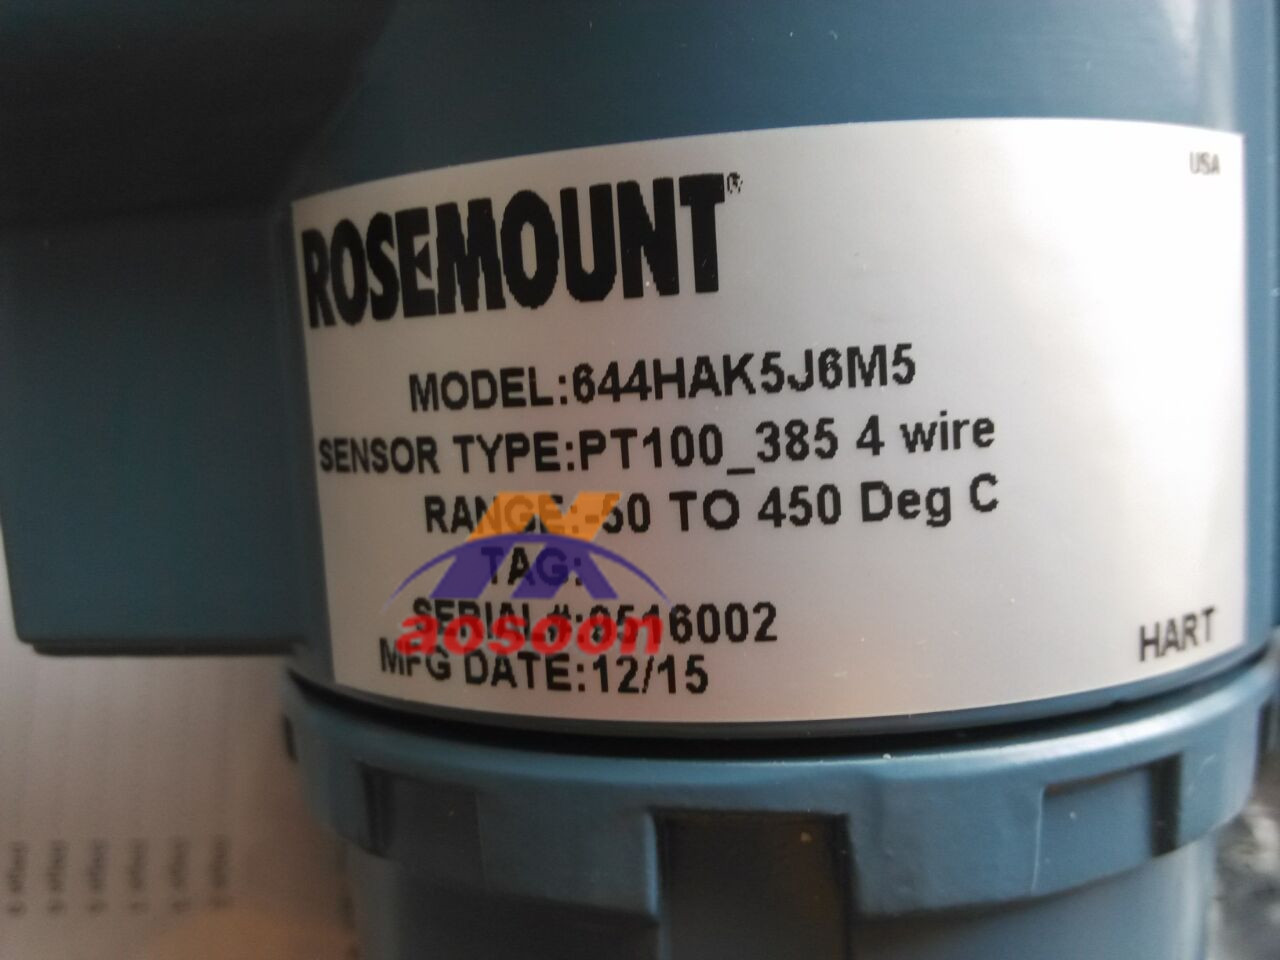 Rosemount 0065C and 644HAK5J6M5 Temperature Transmitter